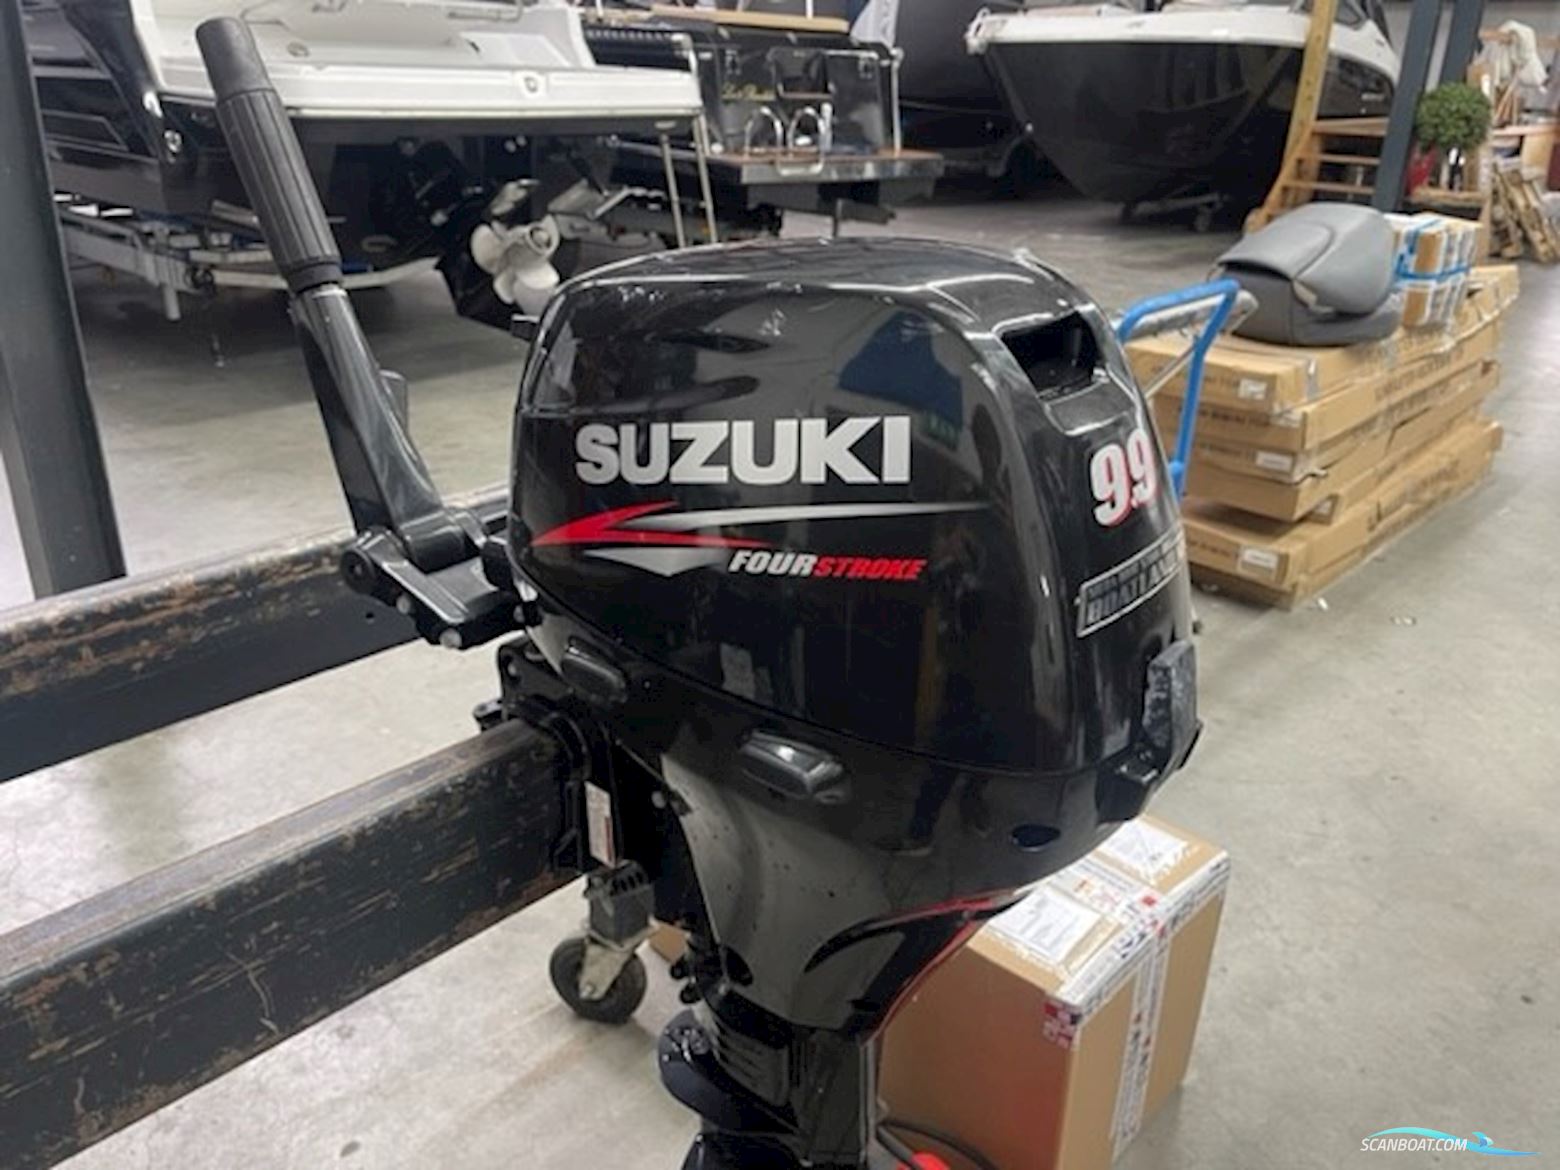 Suzuki DF9.9S Bootsmotor 2015, Niederlande